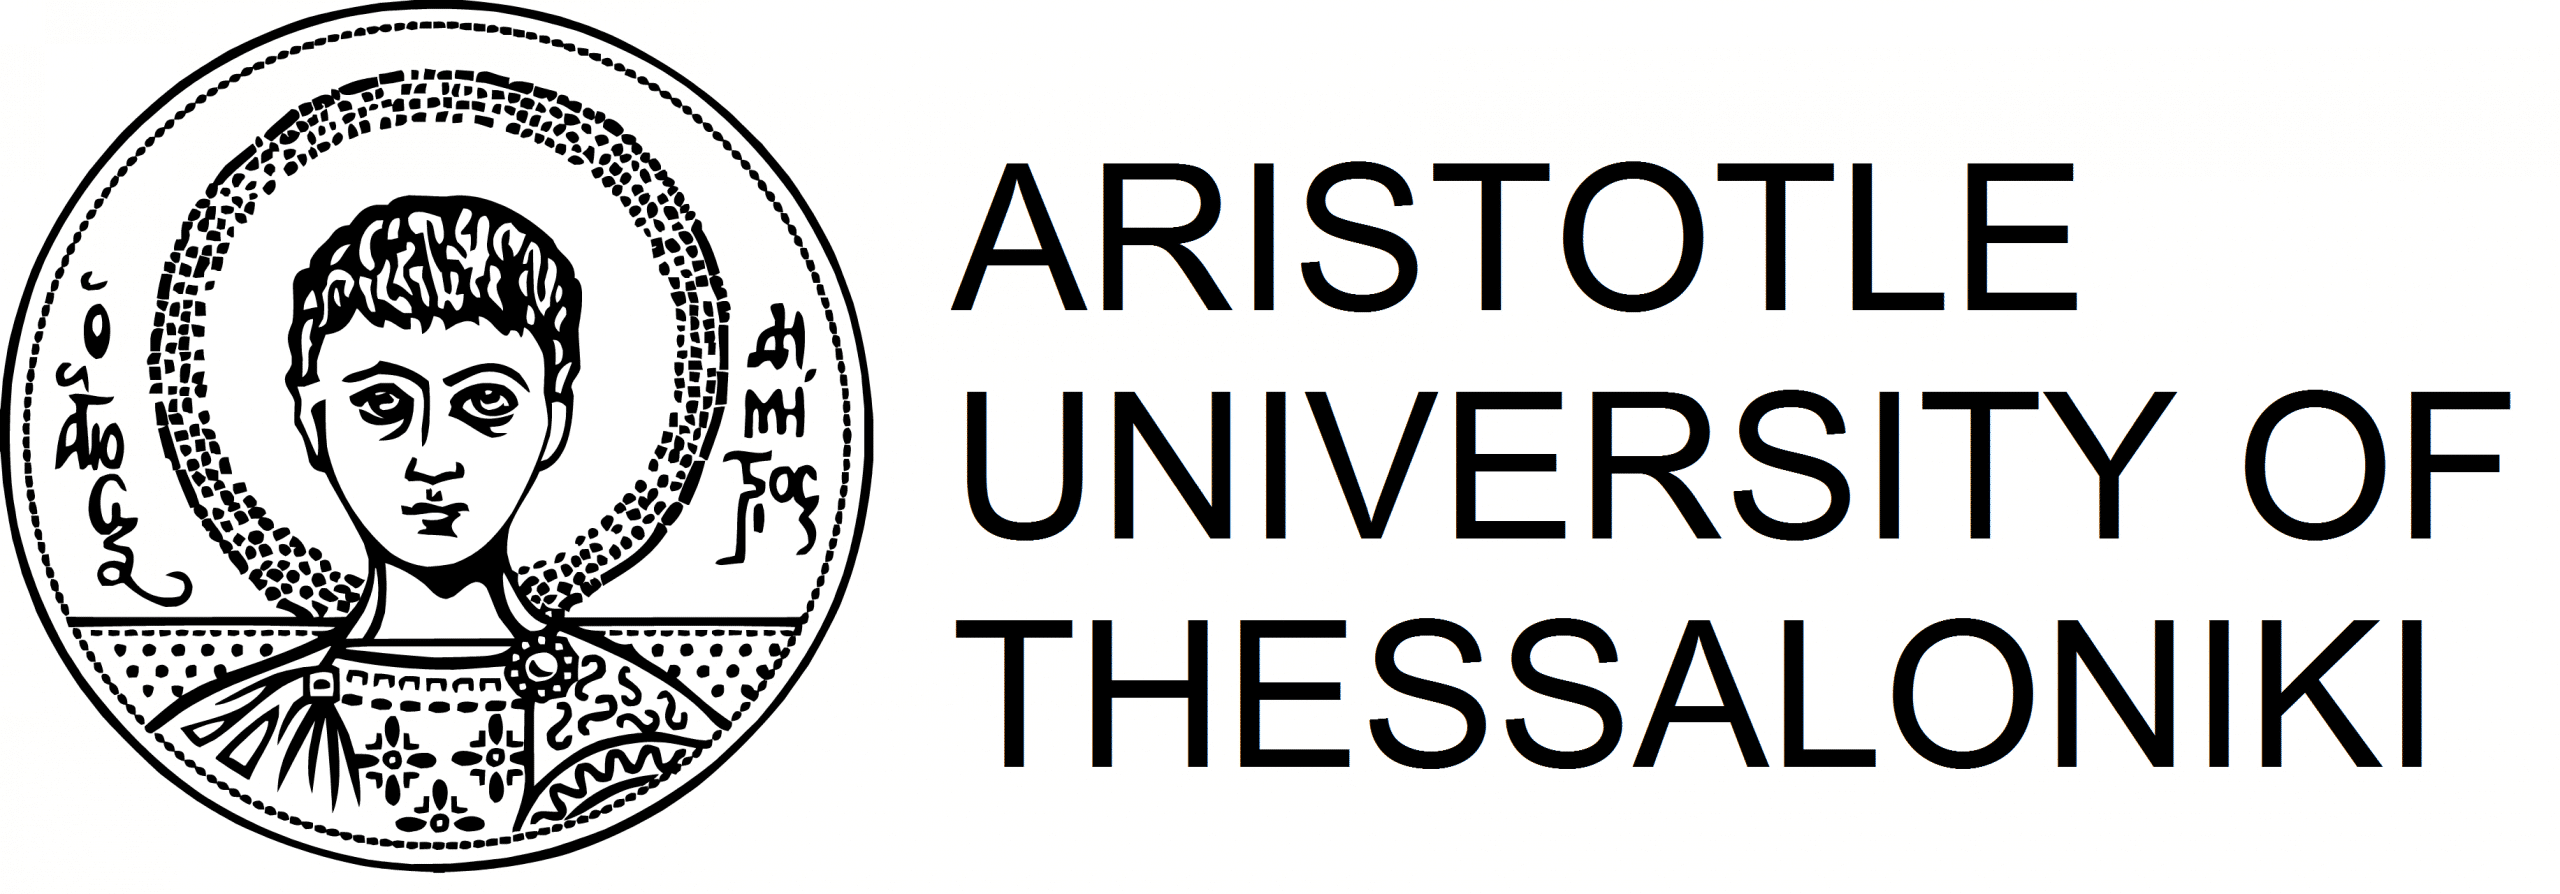 Университет Аристотеля логотип.png